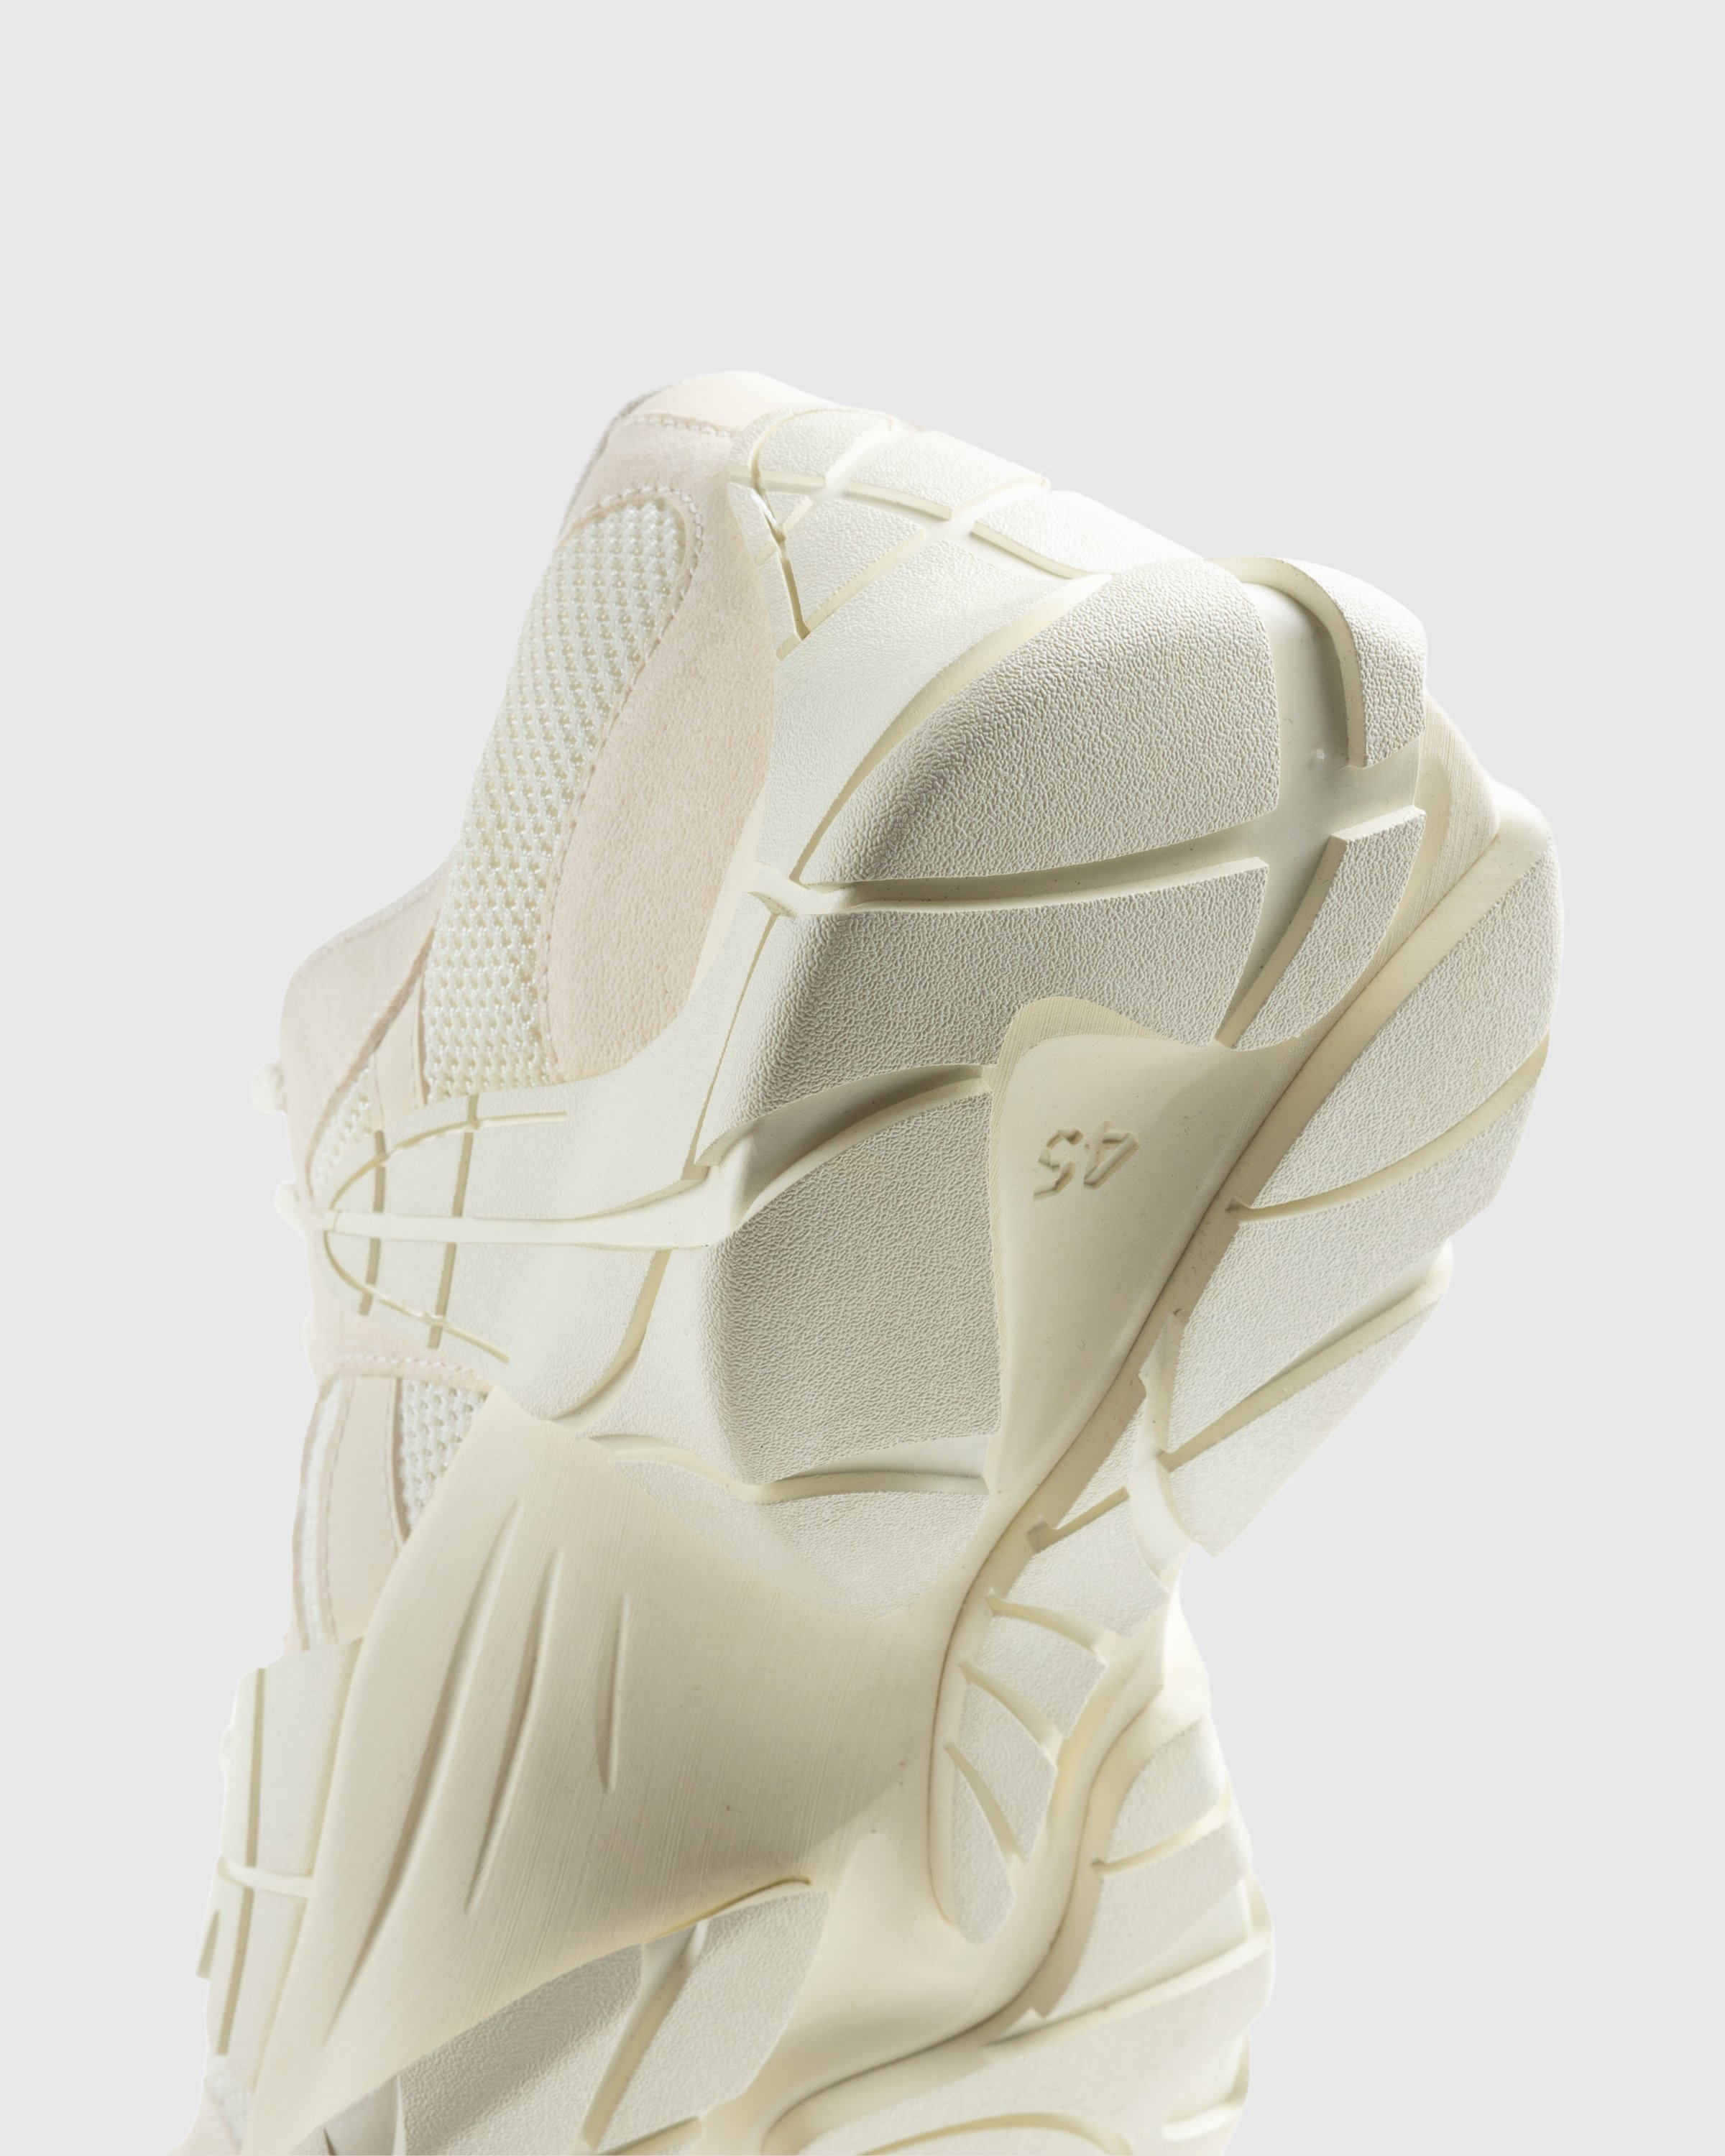 CAMPERLAB - Tormenta White - Footwear - White - Image 6